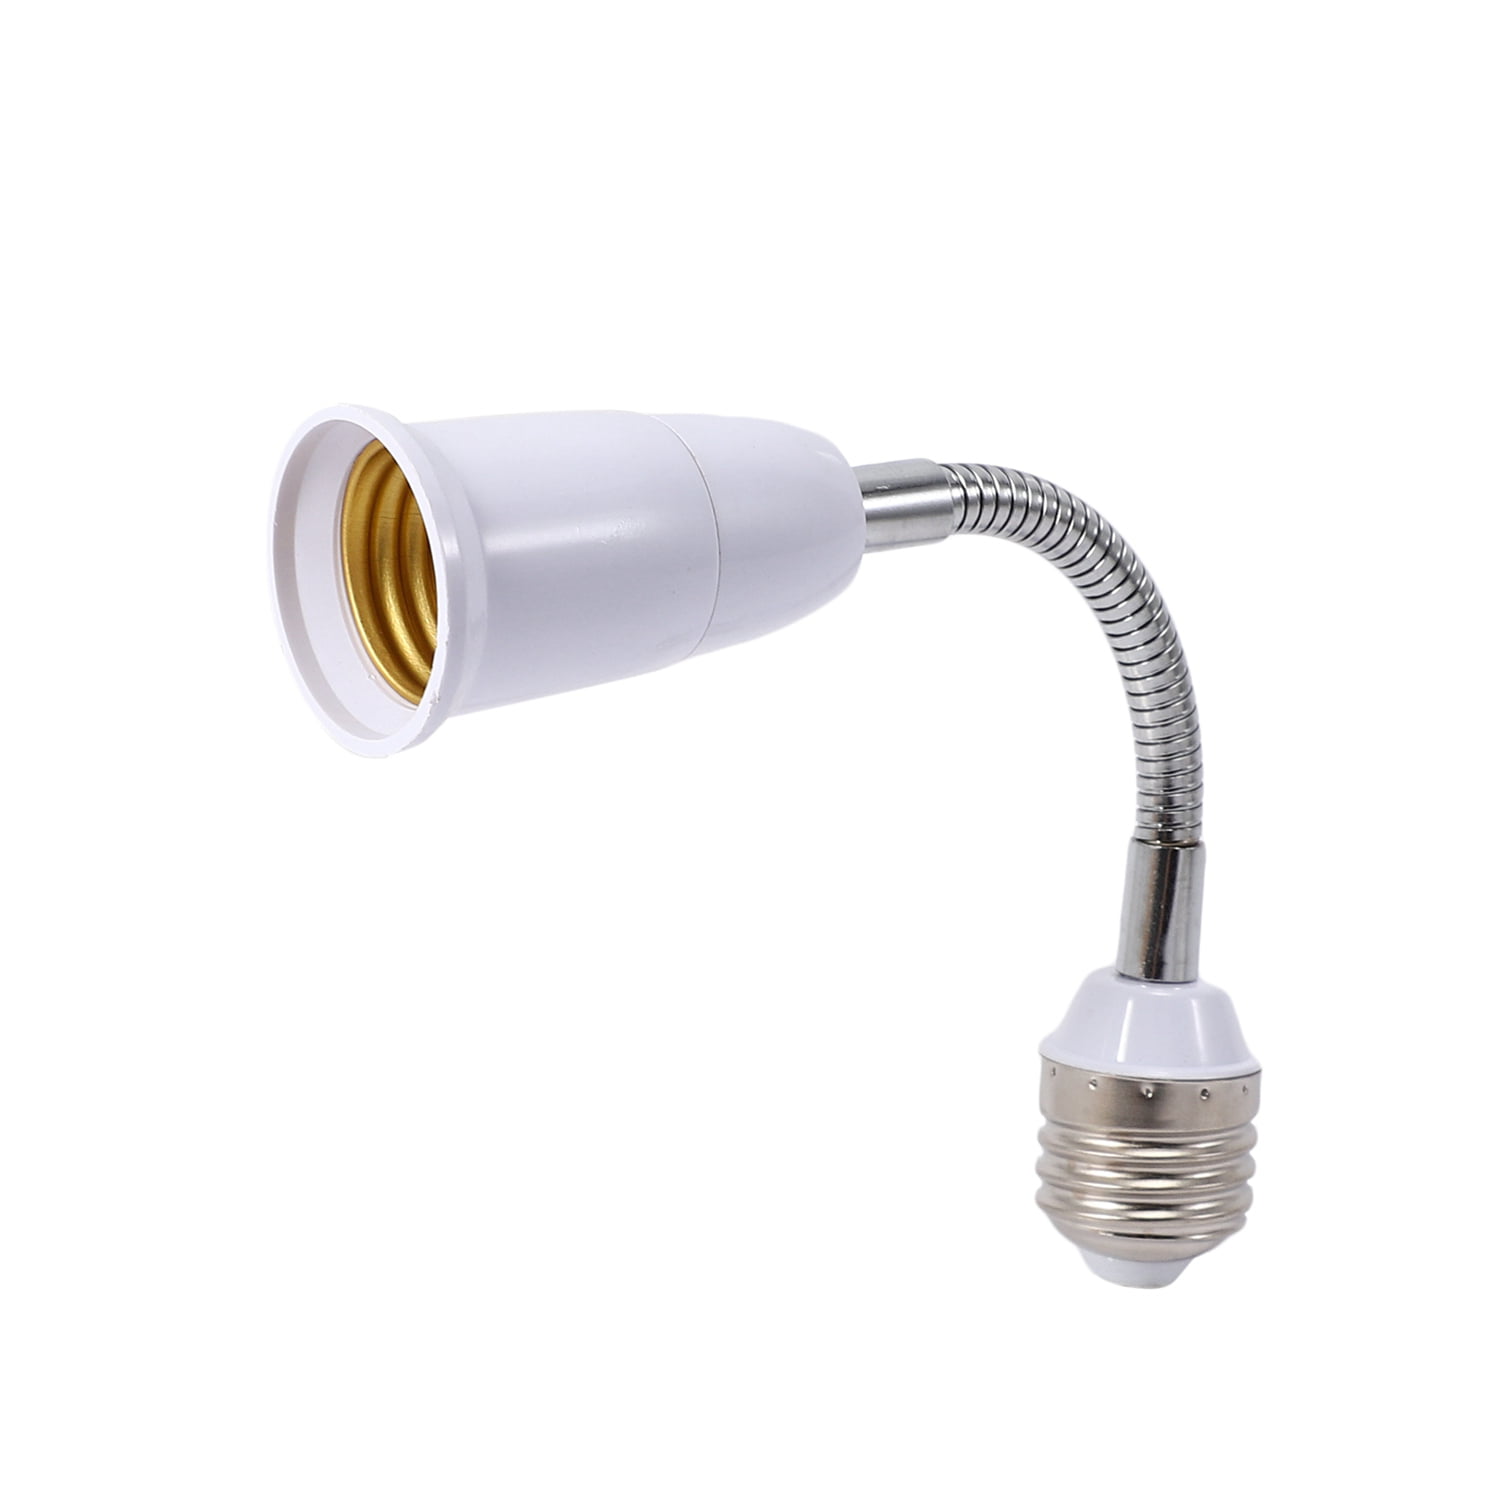 LED Light Bulb Lamp Holder E27 Flexible Extension Adapter Converter Screw Socket 